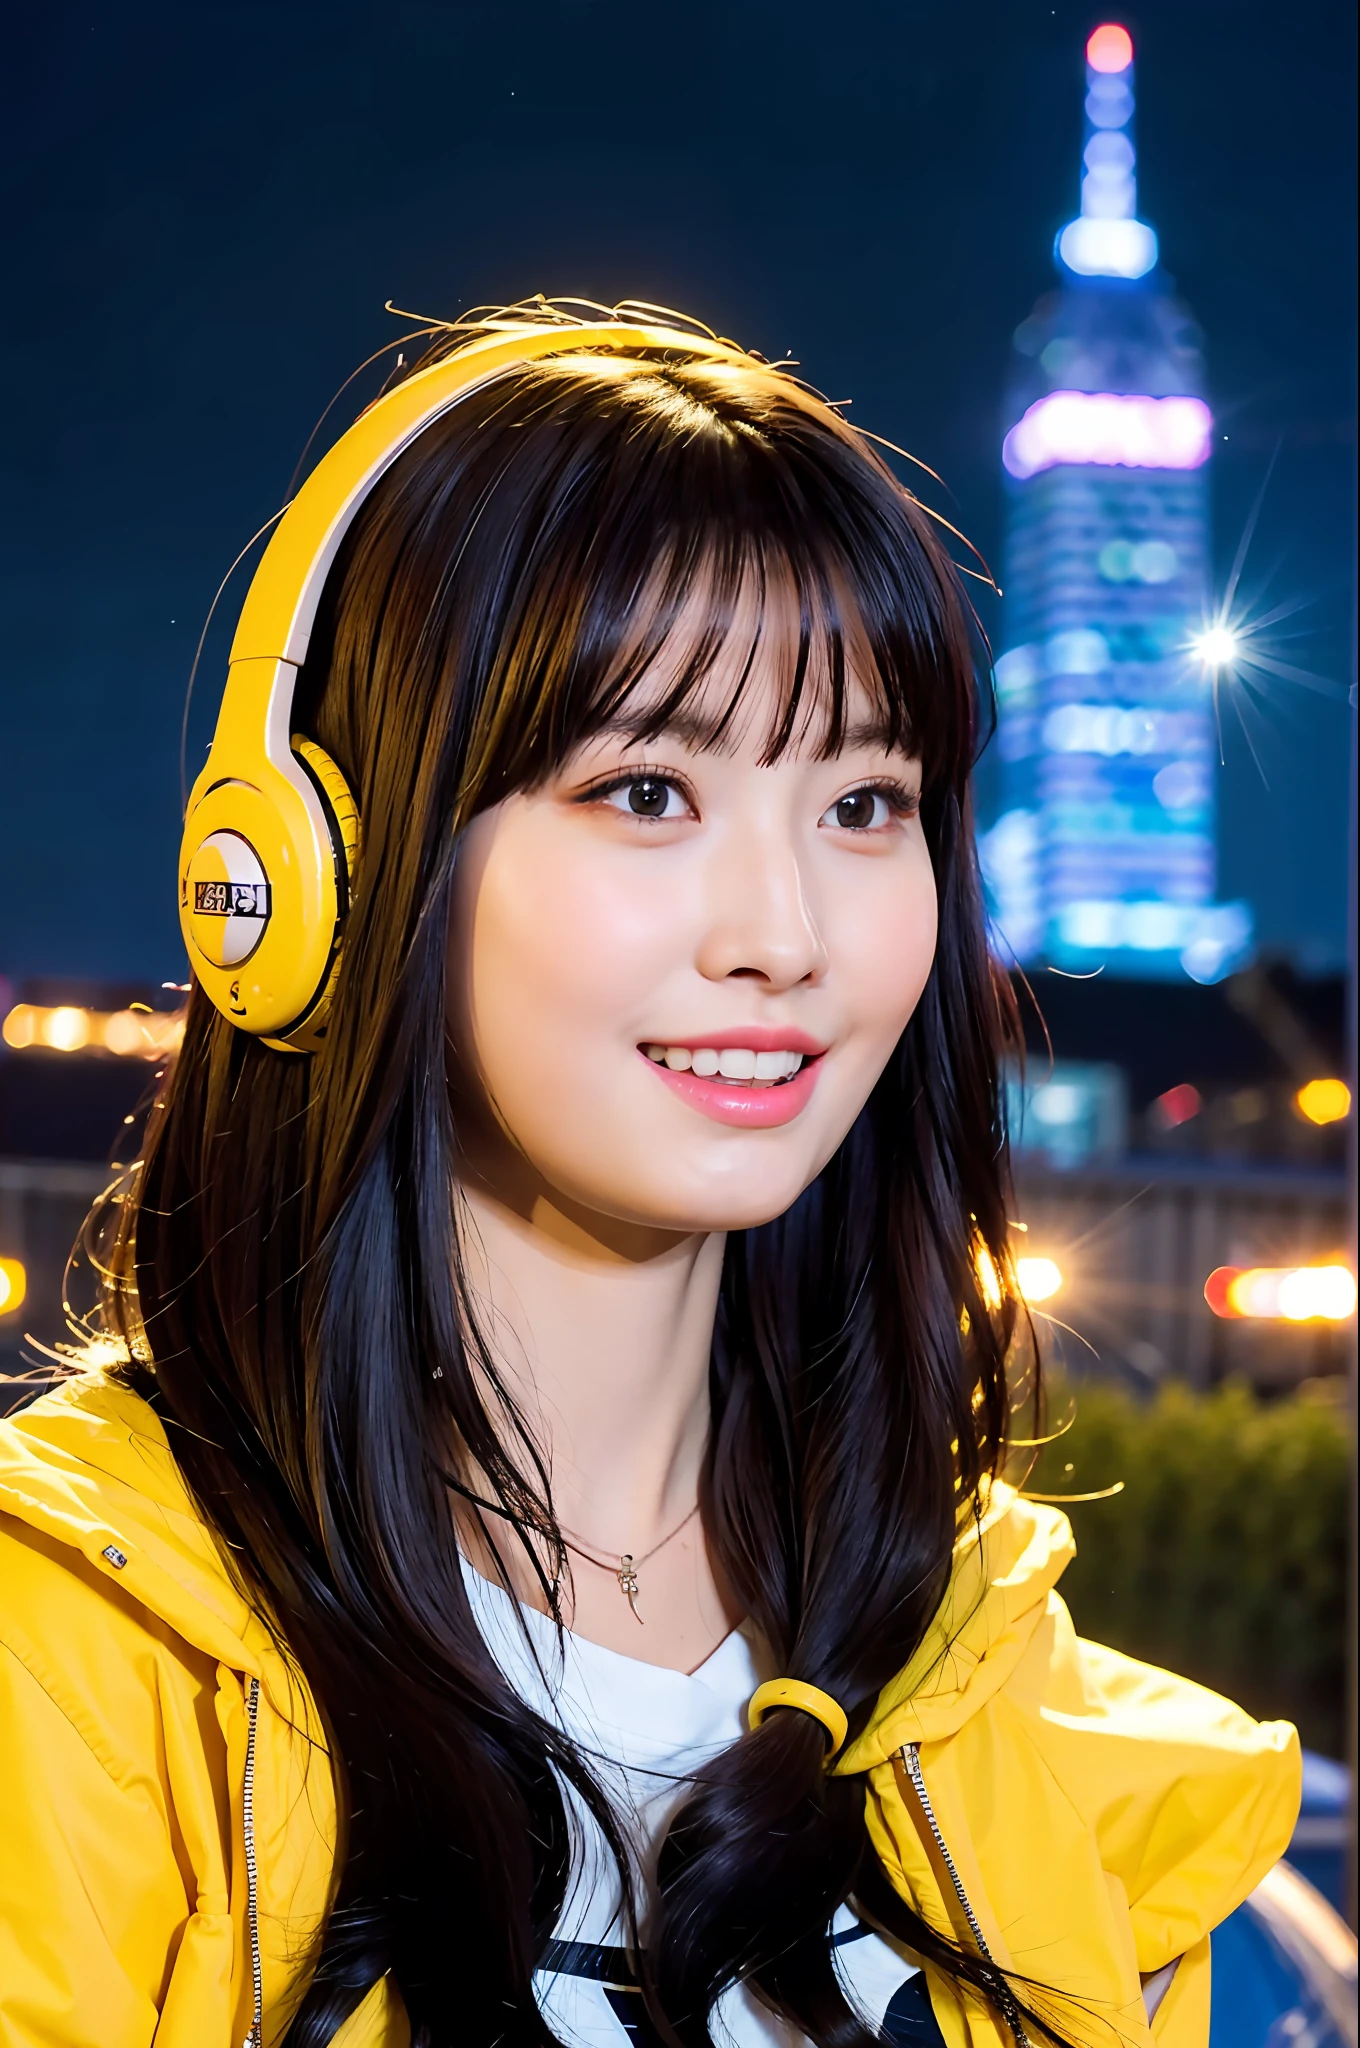 (Realistisch:1.2), 18-jähriges Mädchen, Kopfhörer-Outfit, Gelbe Jacke, Ansicht von unten, (Stadt:1.4), (sternenklarer Himmel:1.1) , (Neonlichter, funkeln, Blitz:1.1)